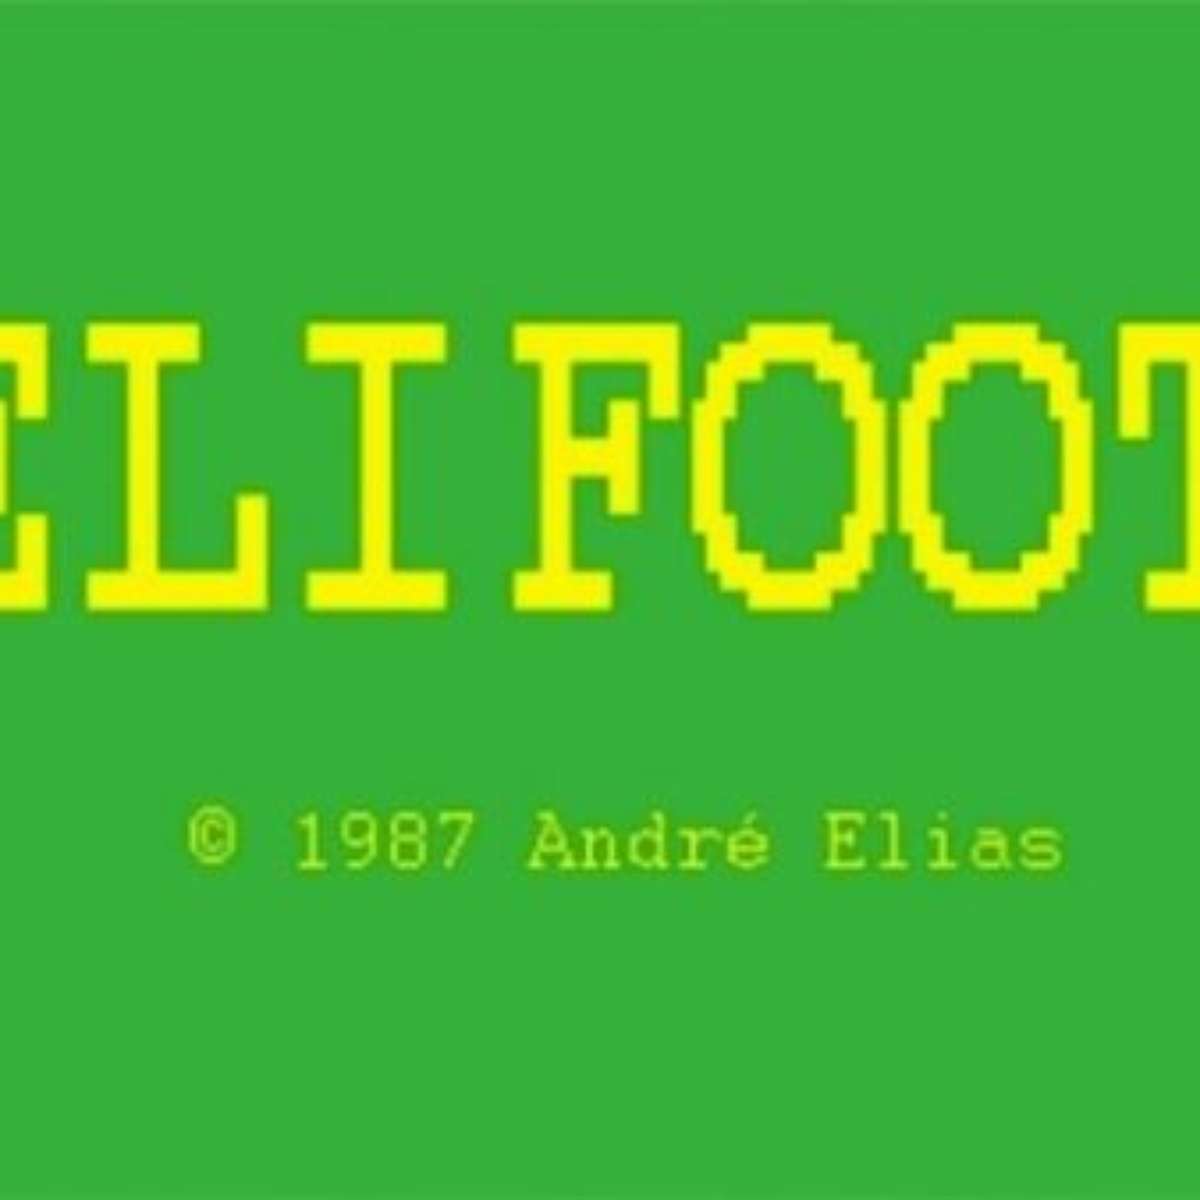 Elifoot: Relembre o rei dos managers de futebol